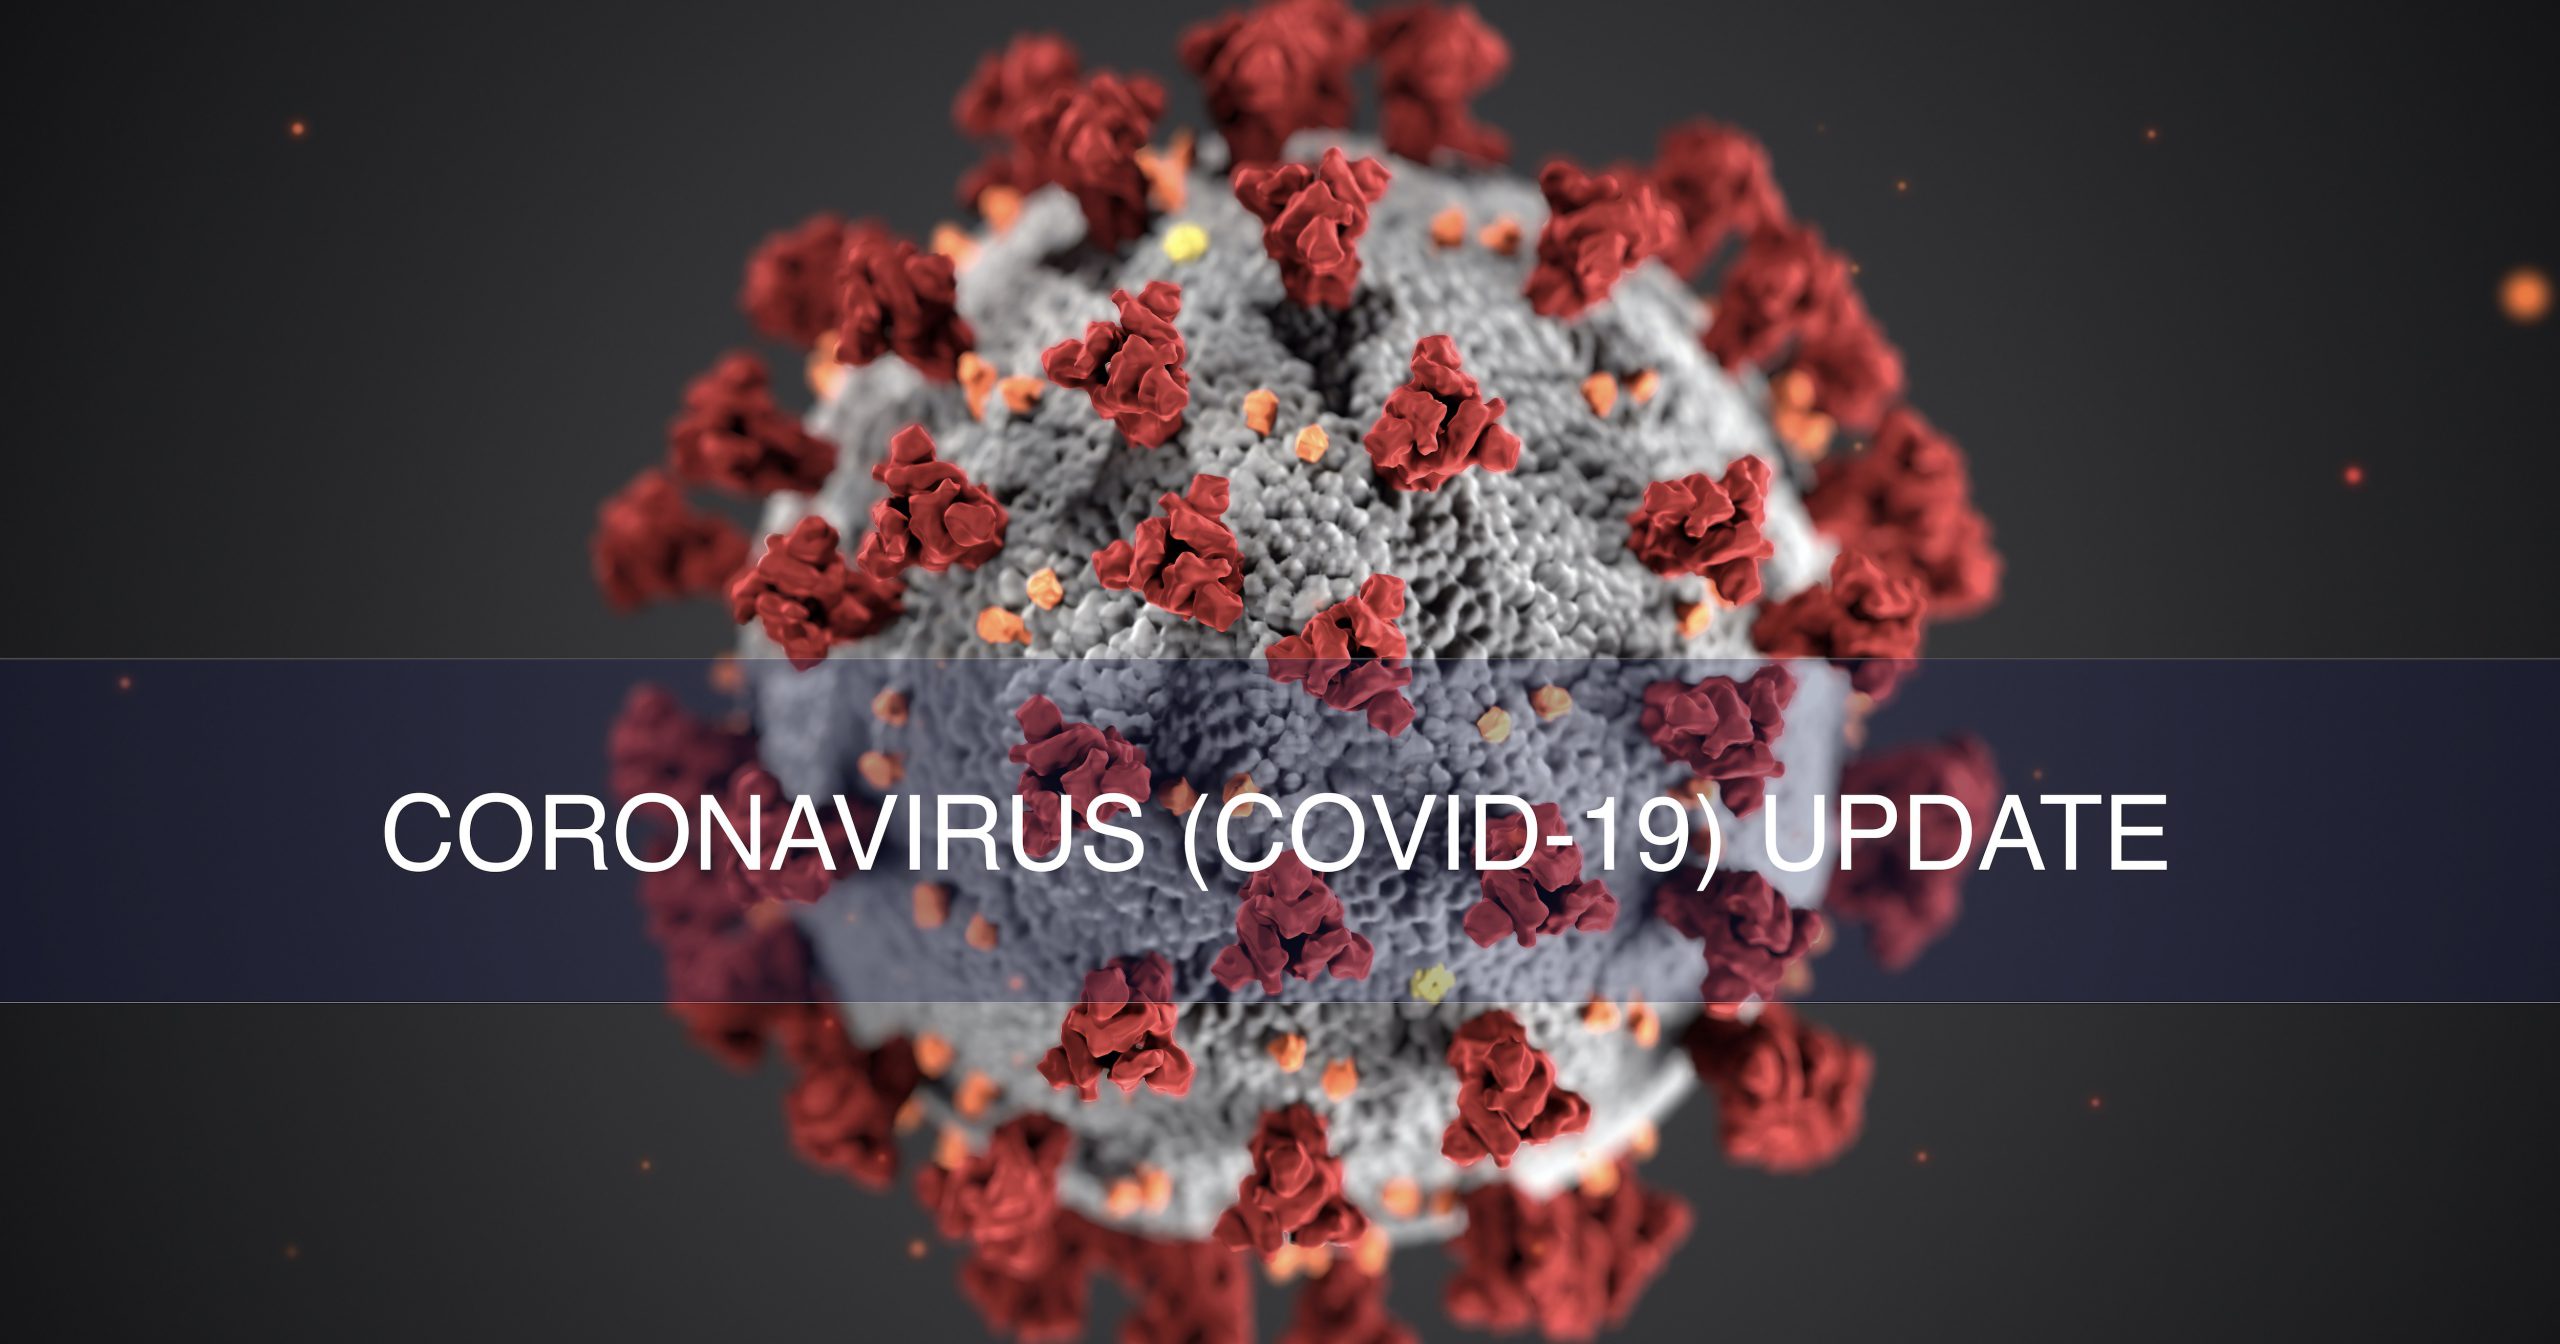 Glpg Covid 19 Update Coronavirus Online Therapy